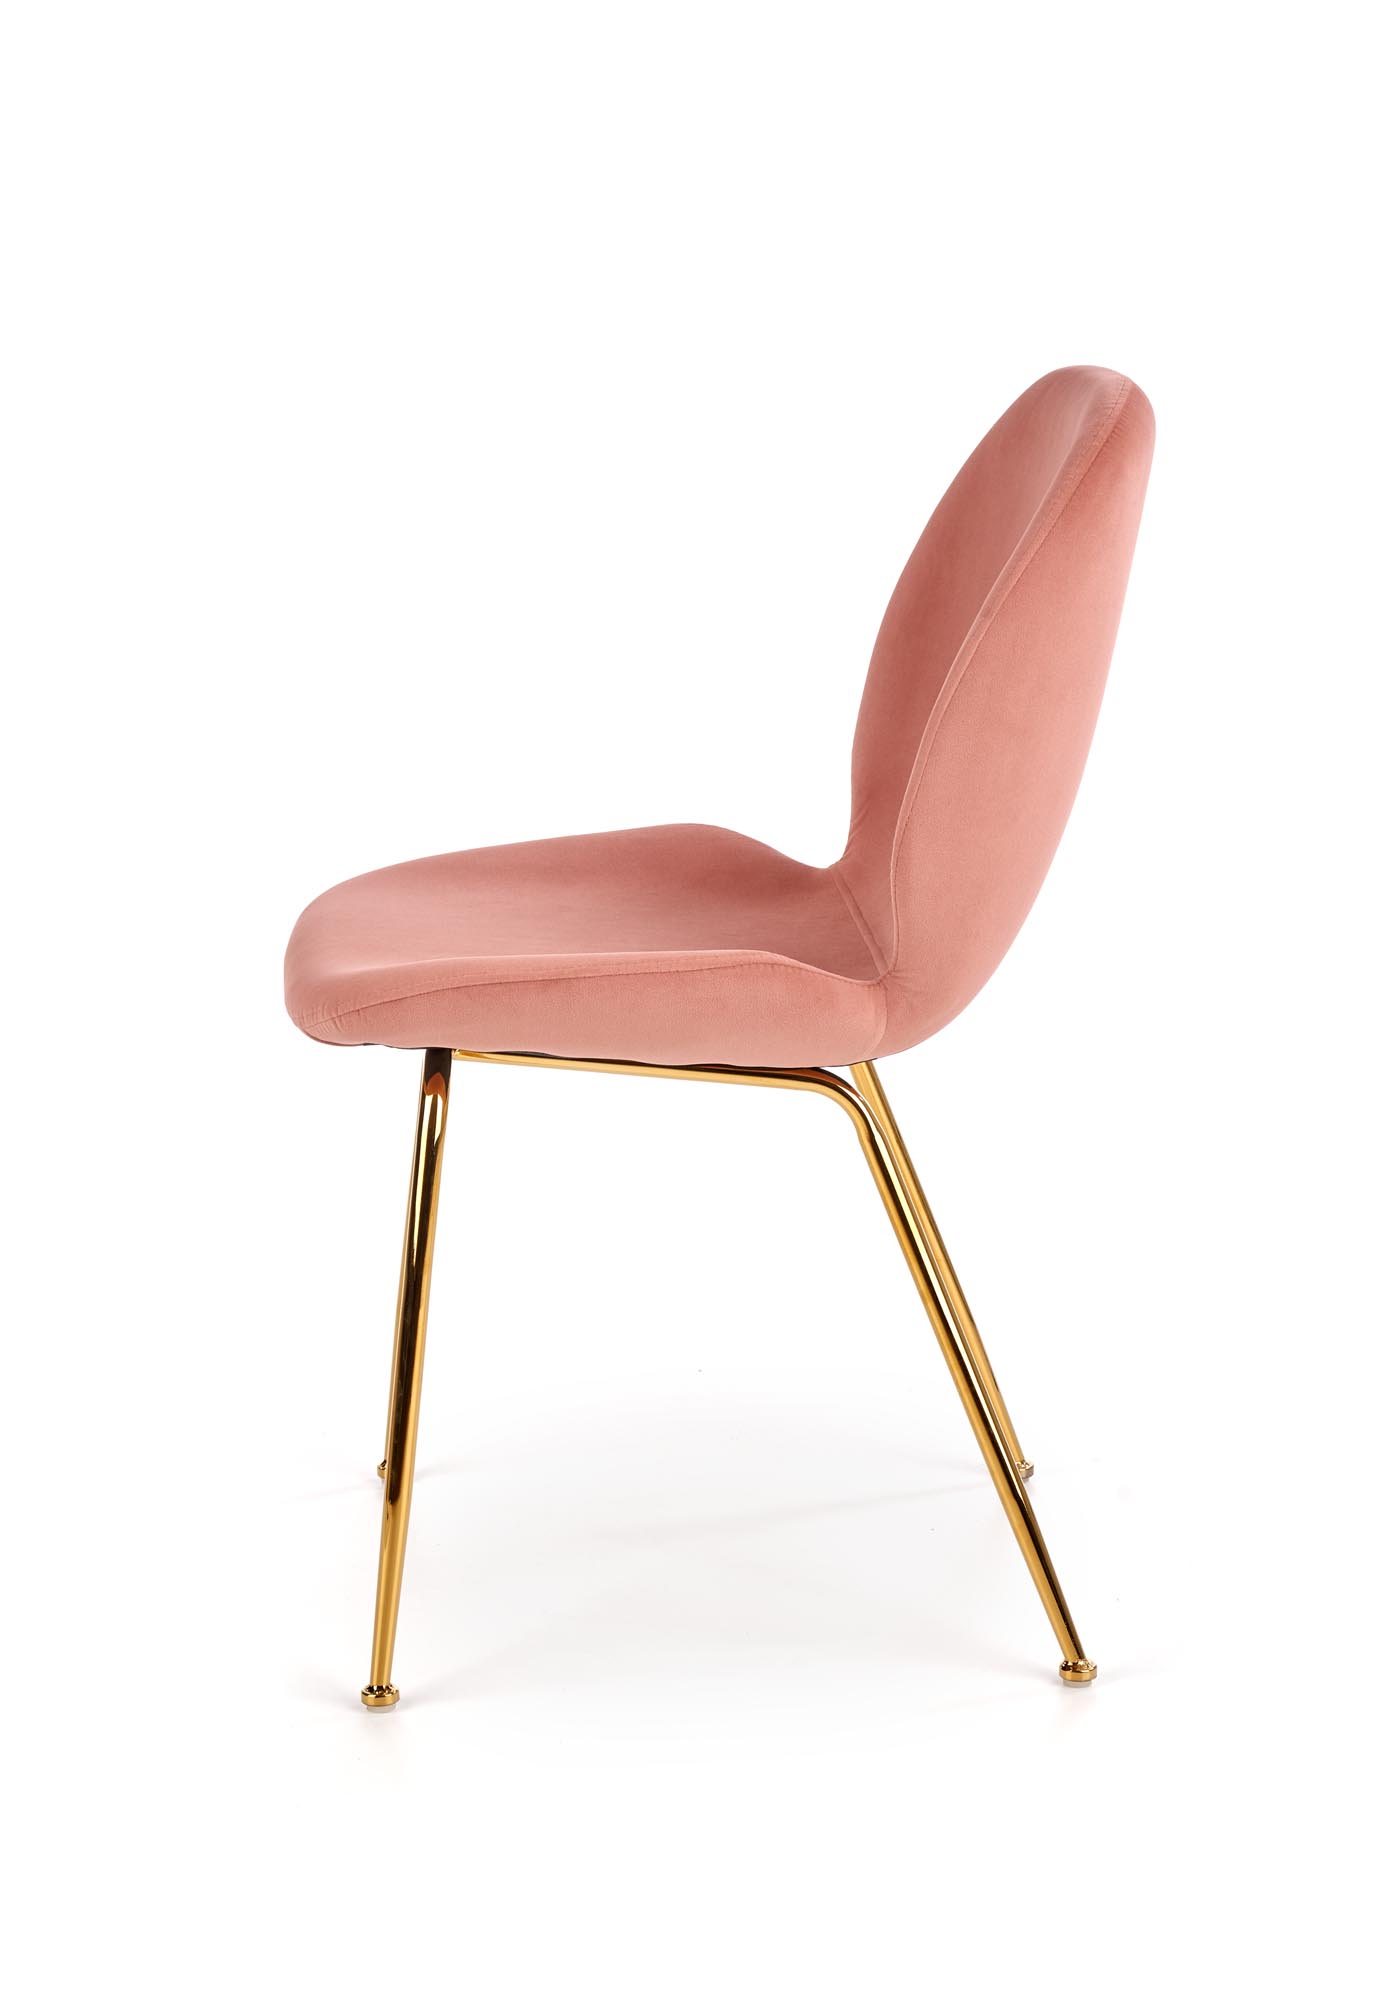 Židle K381 - Růžová / Žlutá Židle k381 - Růžová / Žlutý